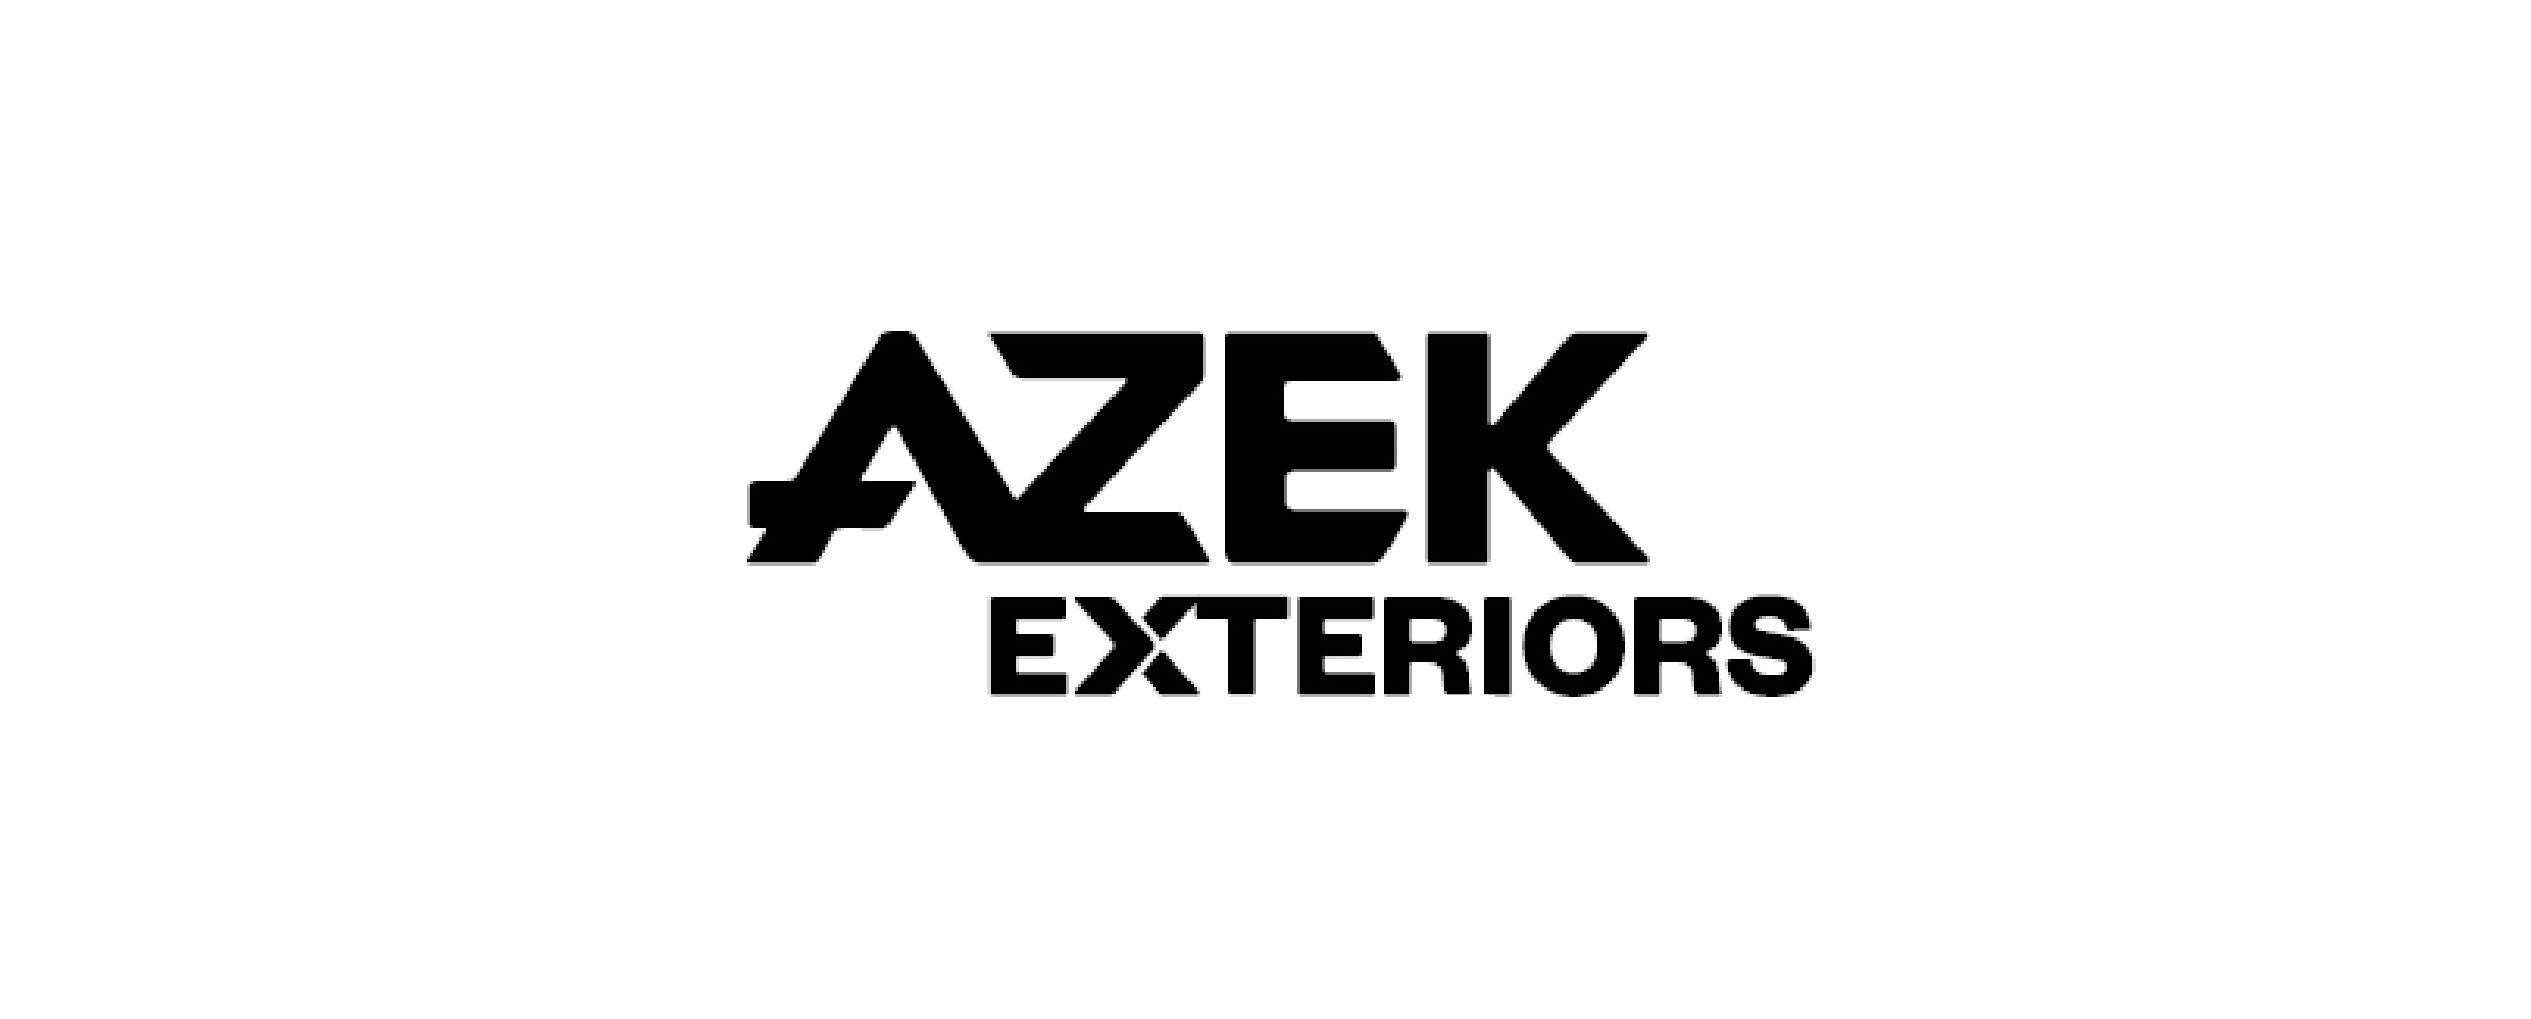  AZEK EXTERIORS